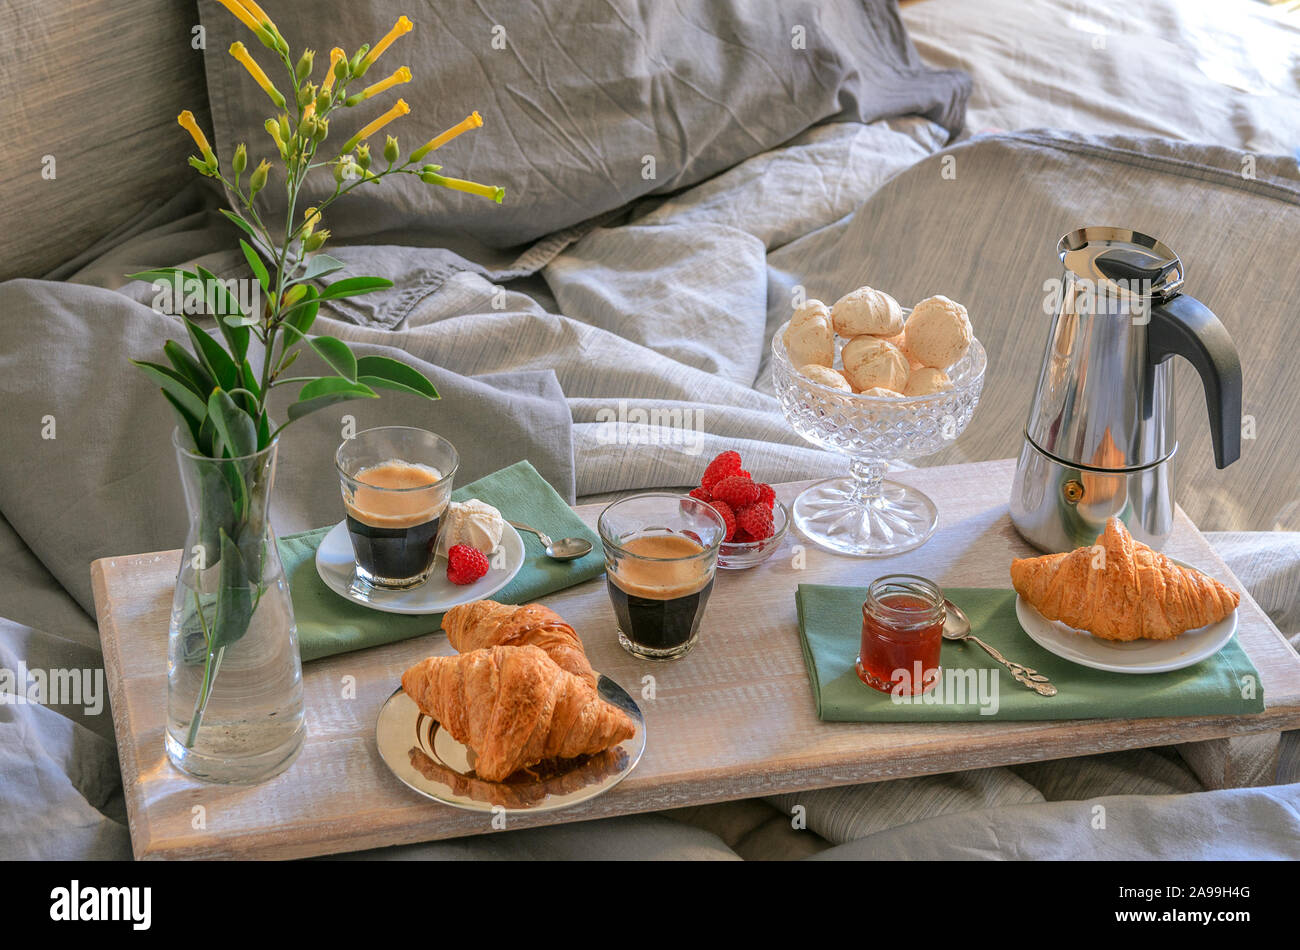 Luxus Frühstück im Bett im Hotel Schlafzimmer. Kaffeemaschine und Kaffee  Gläser, Croissants, Marmelade, Himbeere Meringue und Blumen auf Holz Fach.  Gute m Stockfotografie - Alamy